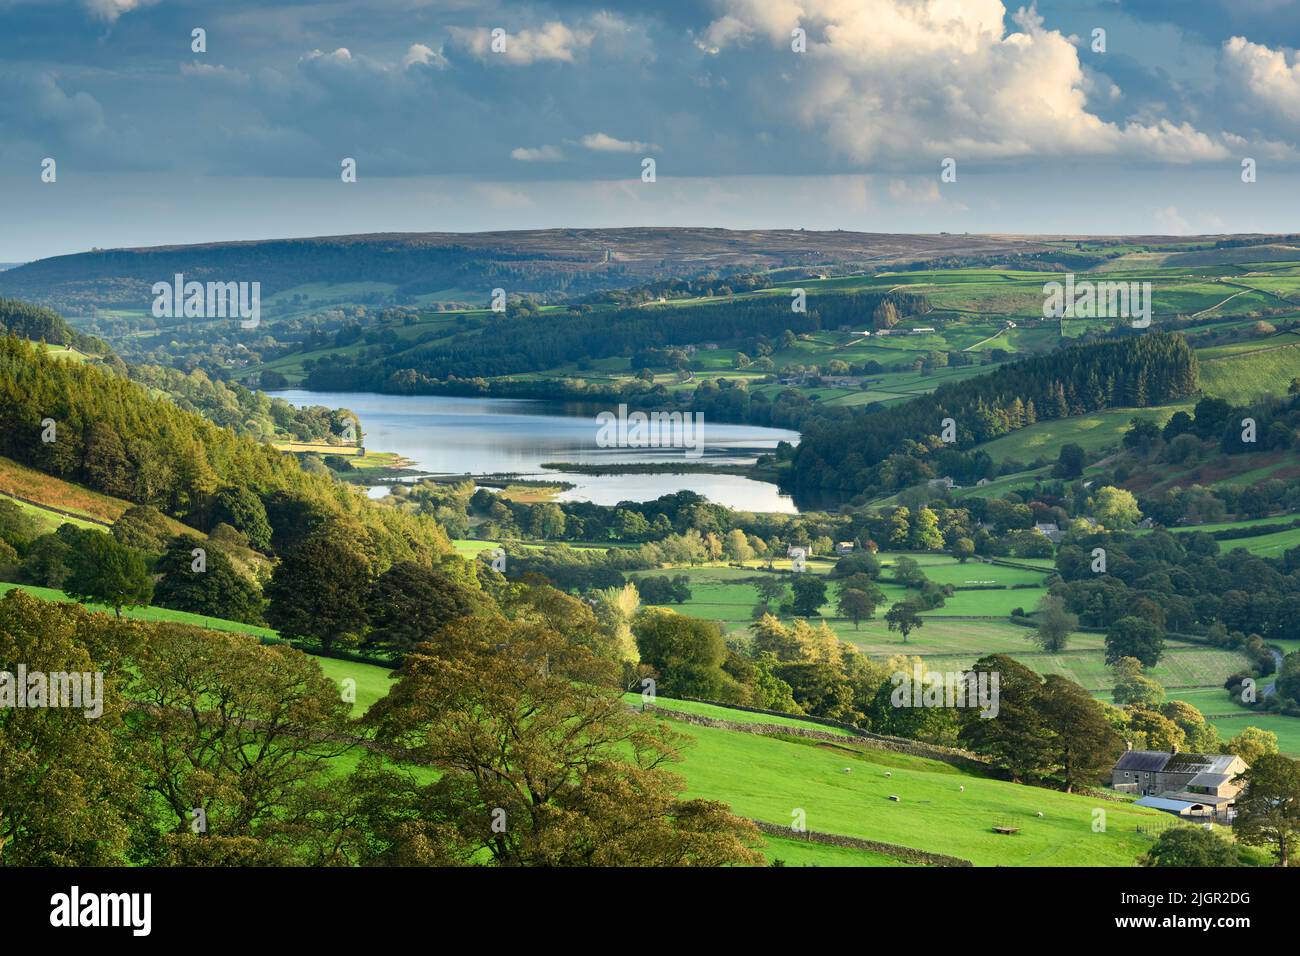 Paisaje protegido de Yorkshire Dales (hermoso paisaje pastoral, árboles en laderas, muros de piedra seca) - Upper Nidheit, Inglaterra, Reino Unido. Foto de stock